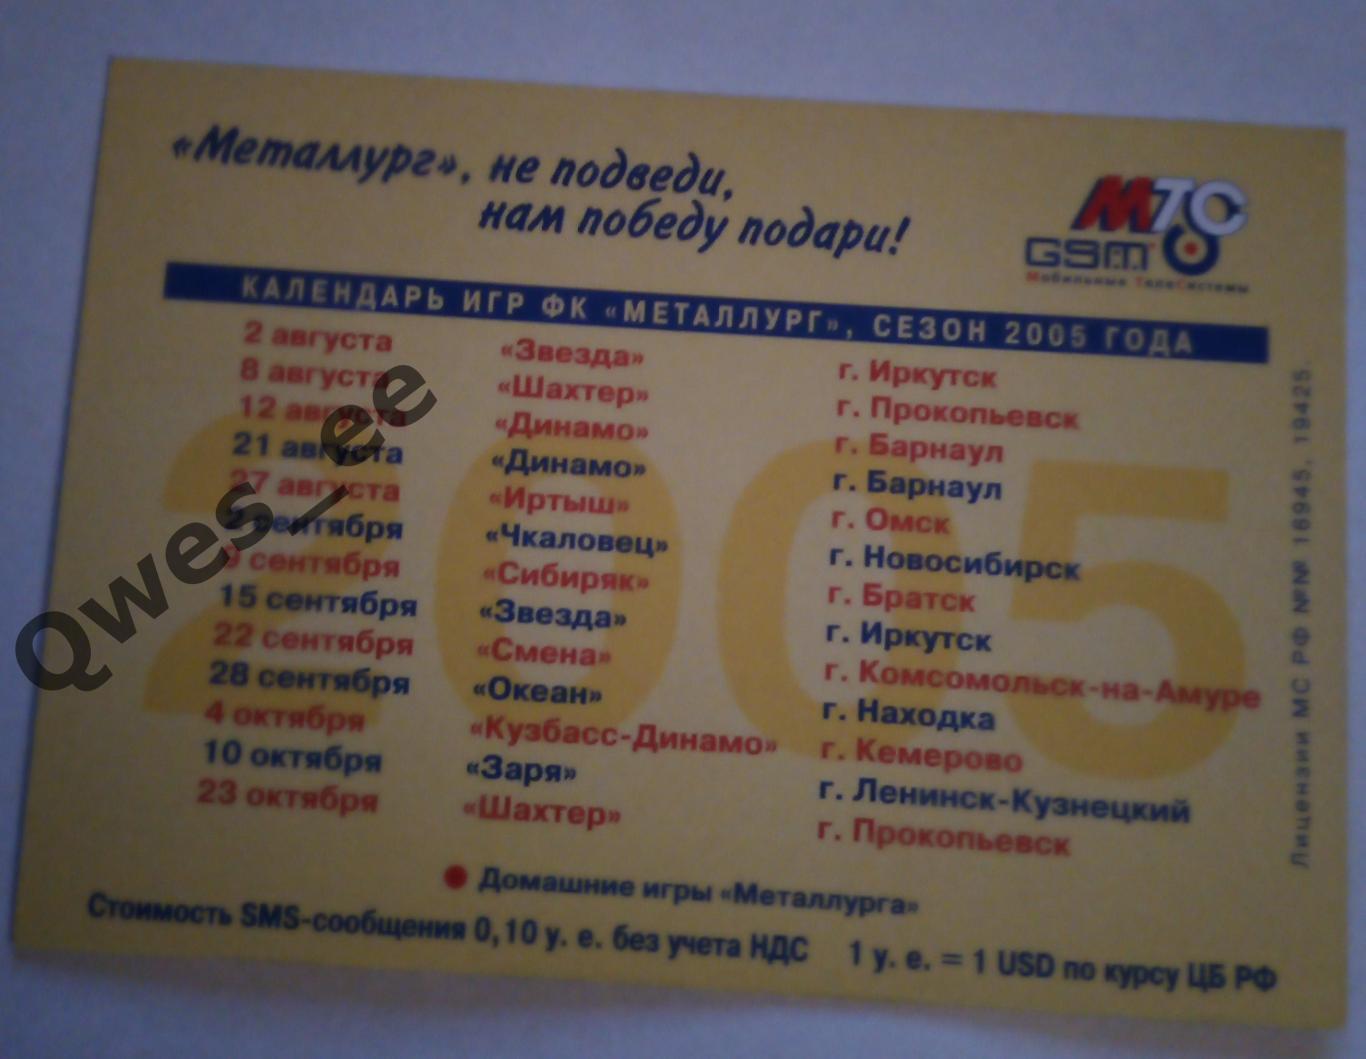 Календарь игр Металлург Красноярск 2005 1